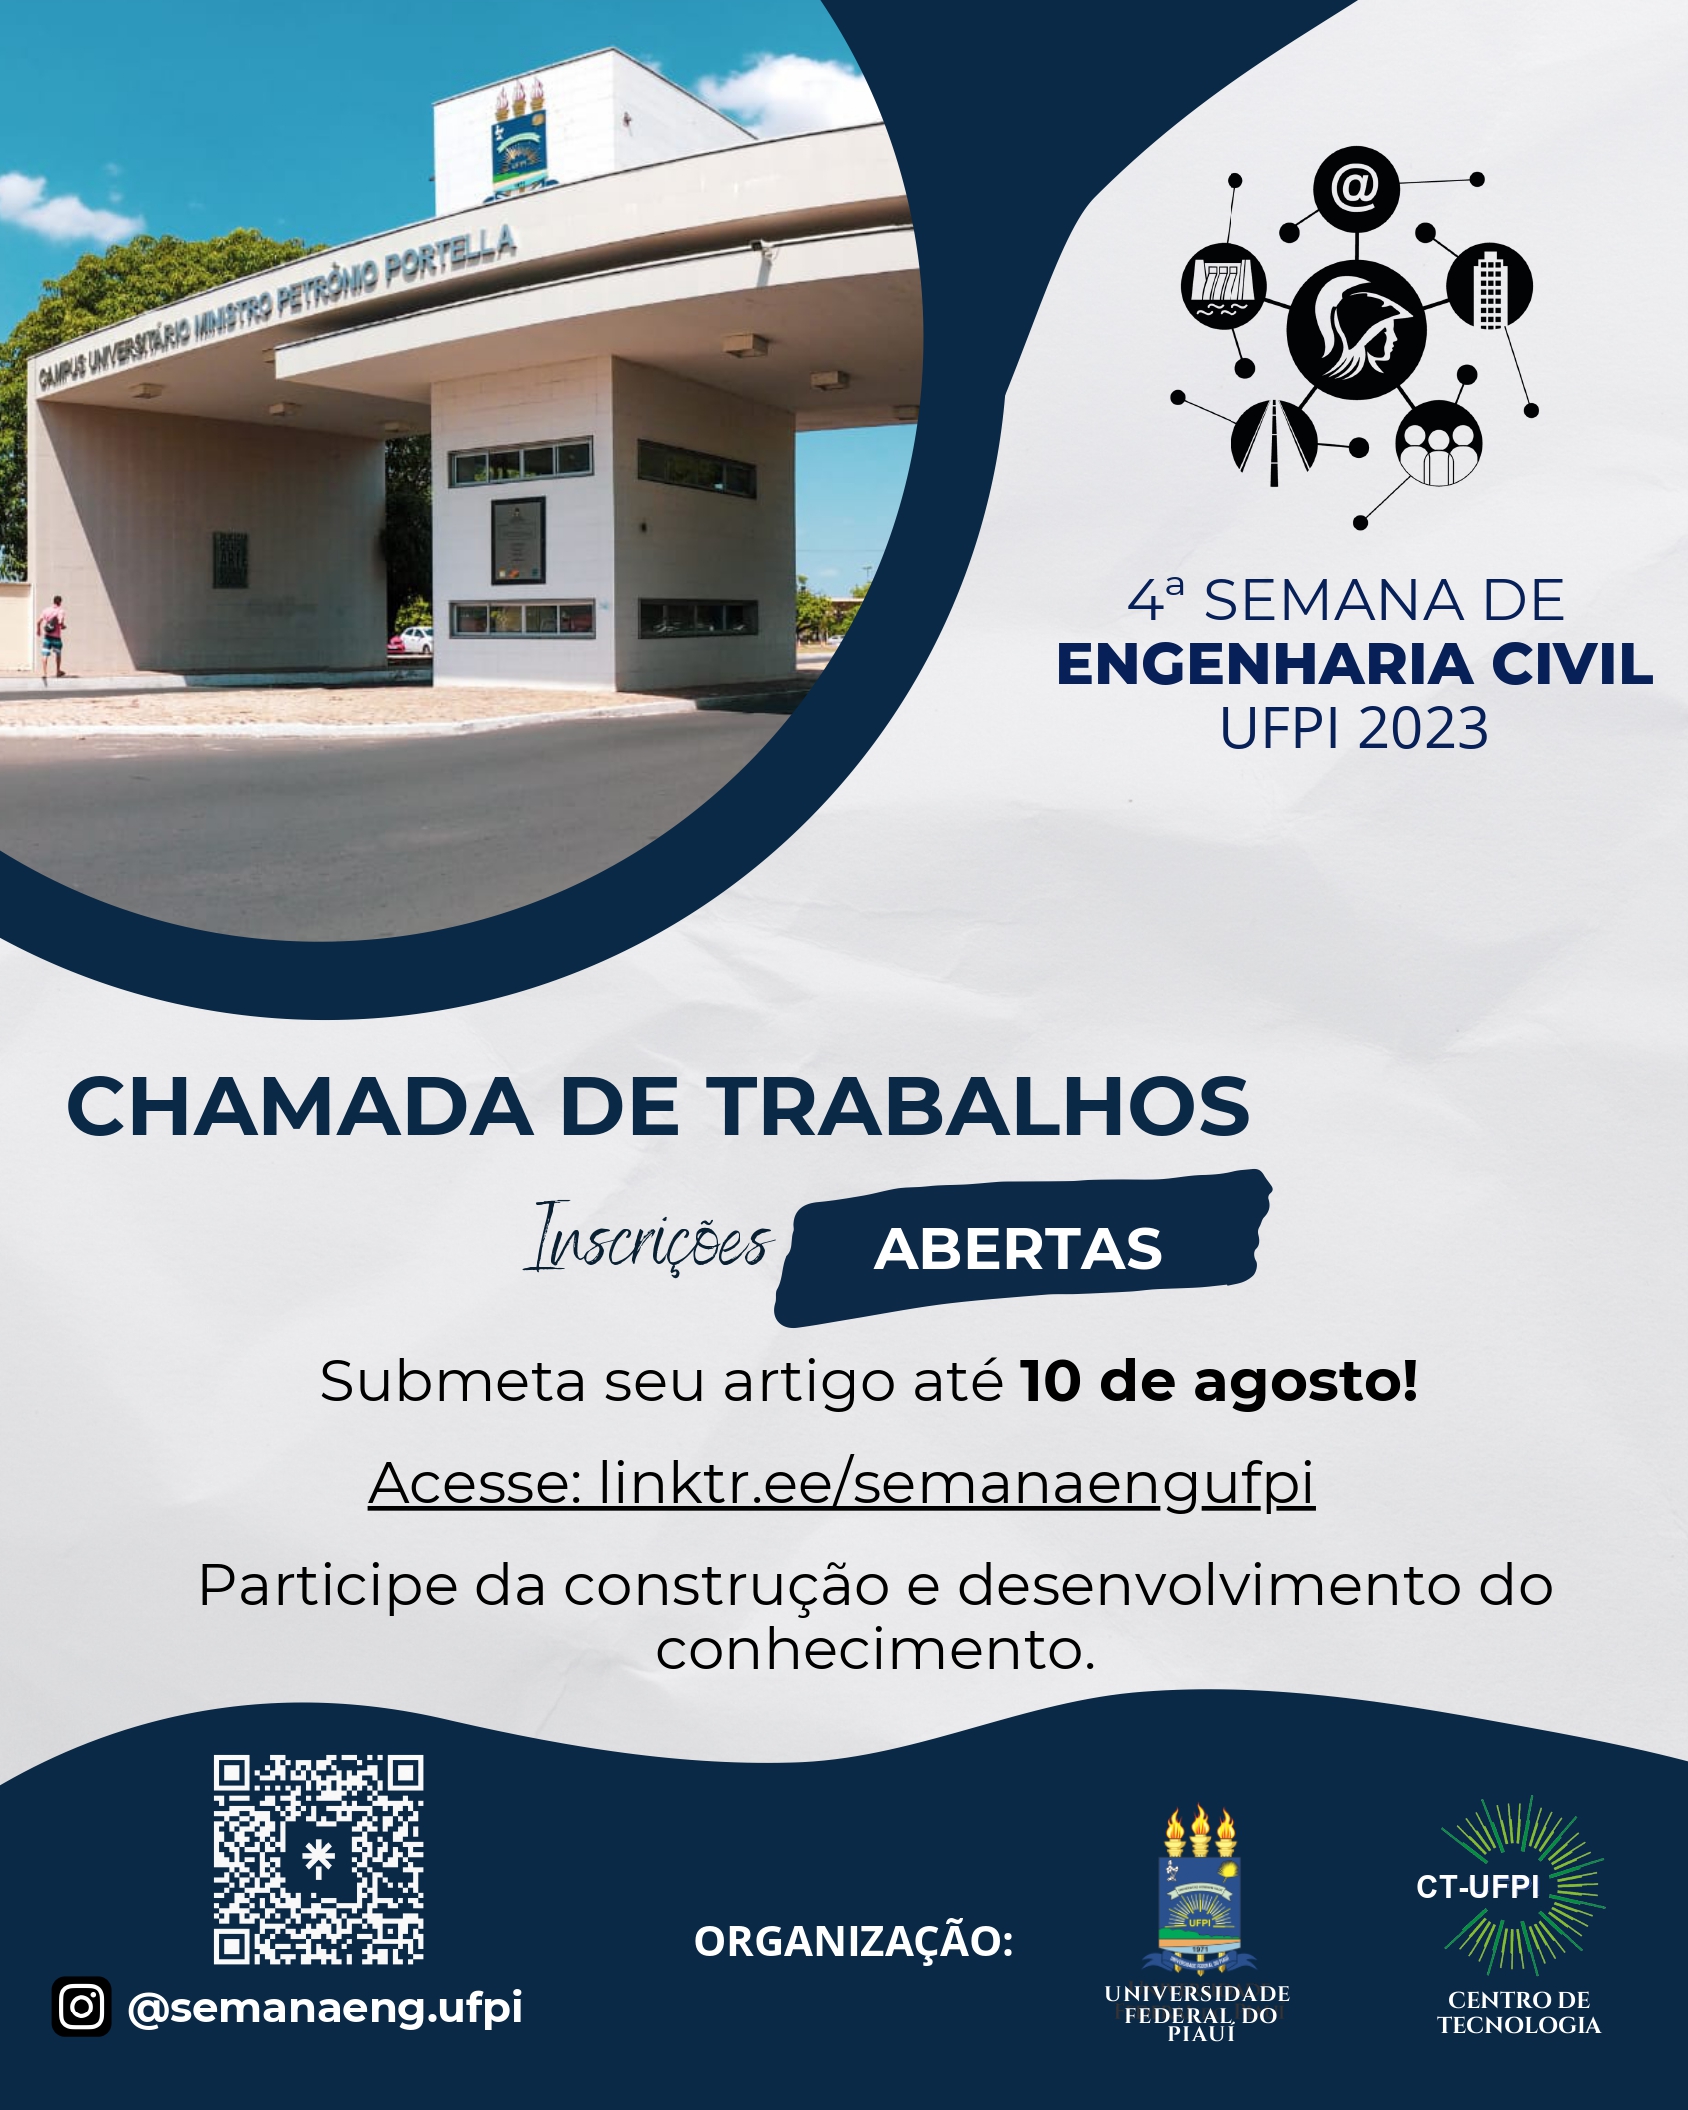 4_Semana_de_Engenharia_Civil_-_UFPI_page-0001.jpg